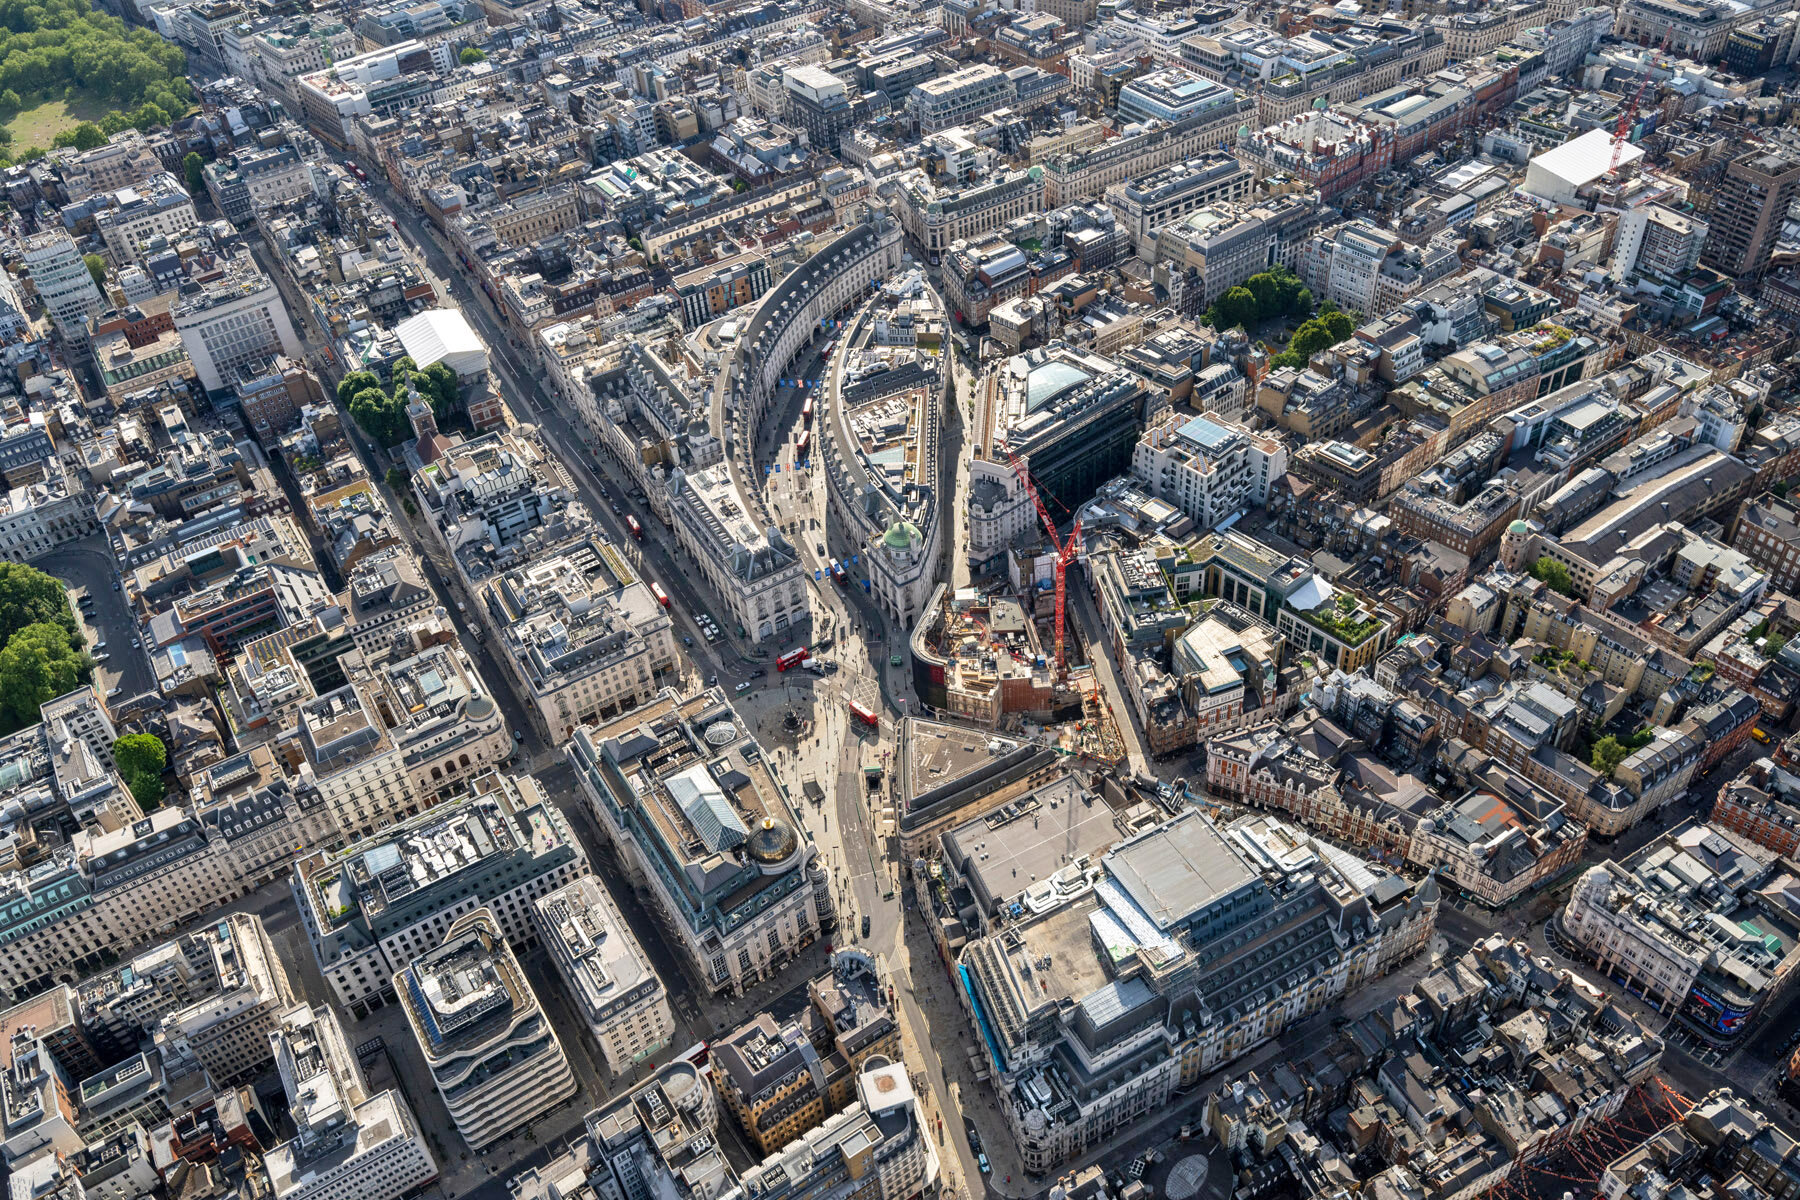  London Aerial Photography - July 2020 © Joas Souza 